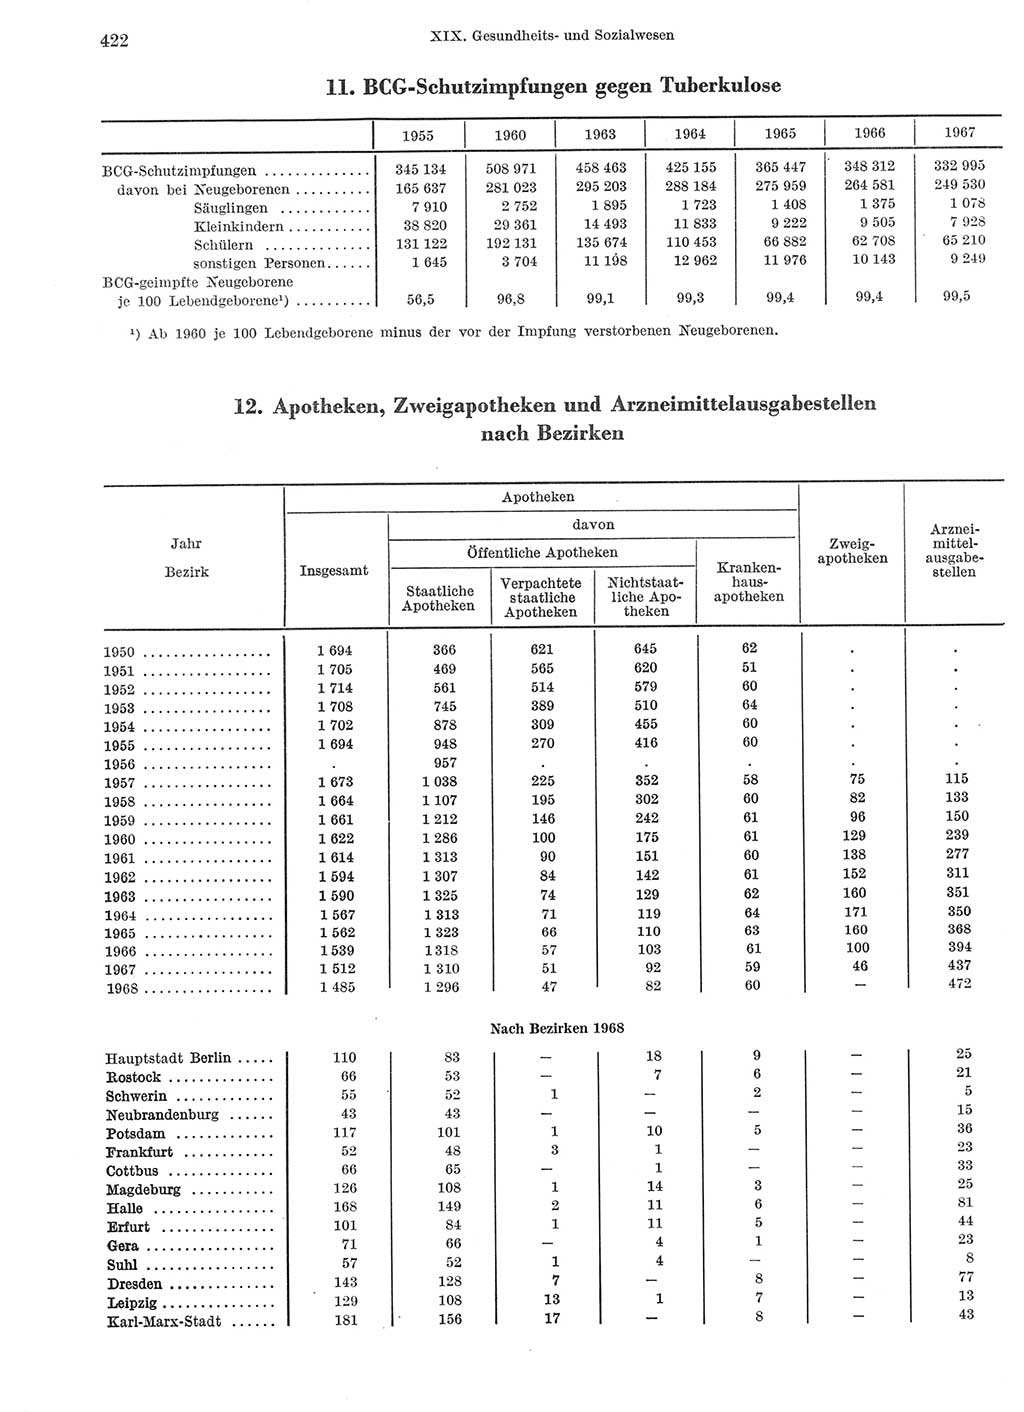 Statistisches Jahrbuch der Deutschen Demokratischen Republik (DDR) 1969, Seite 422 (Stat. Jb. DDR 1969, S. 422)